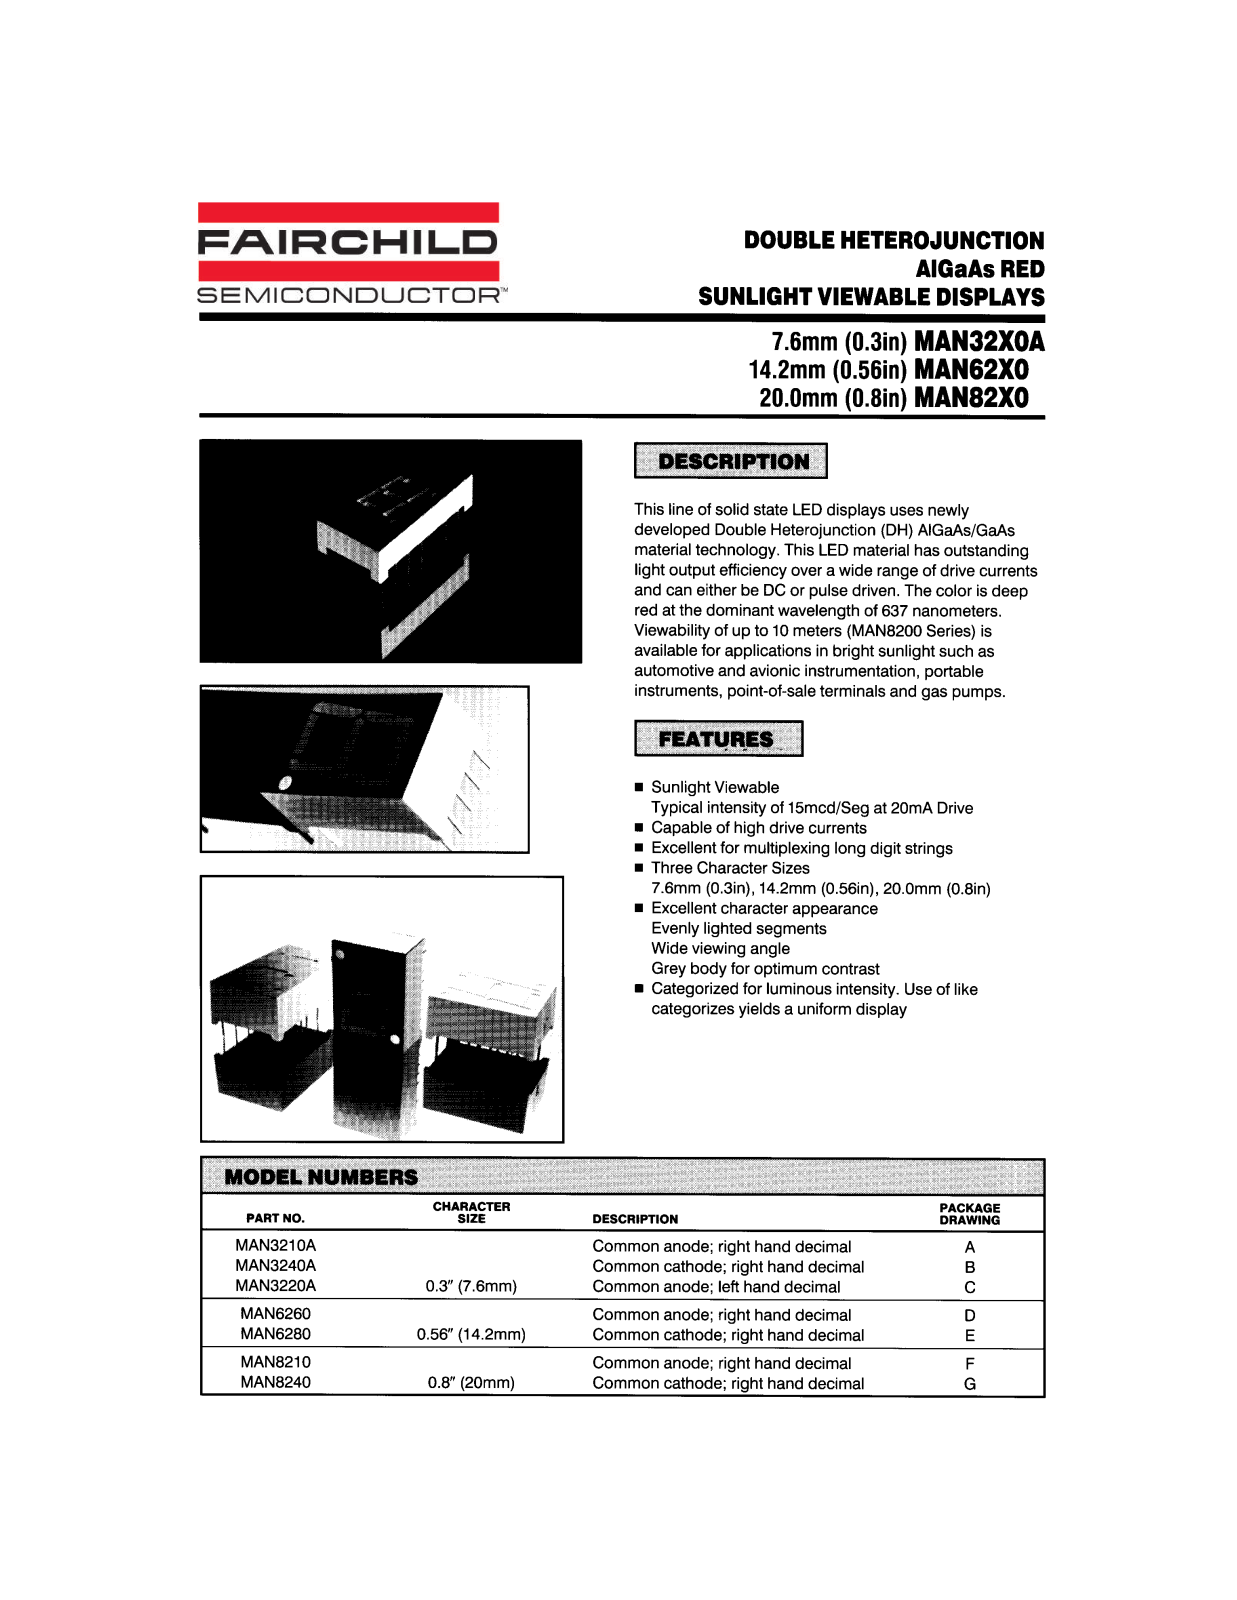 Fairchild Semiconductor MAN8210, MAN6280, MAN8240 Datasheet